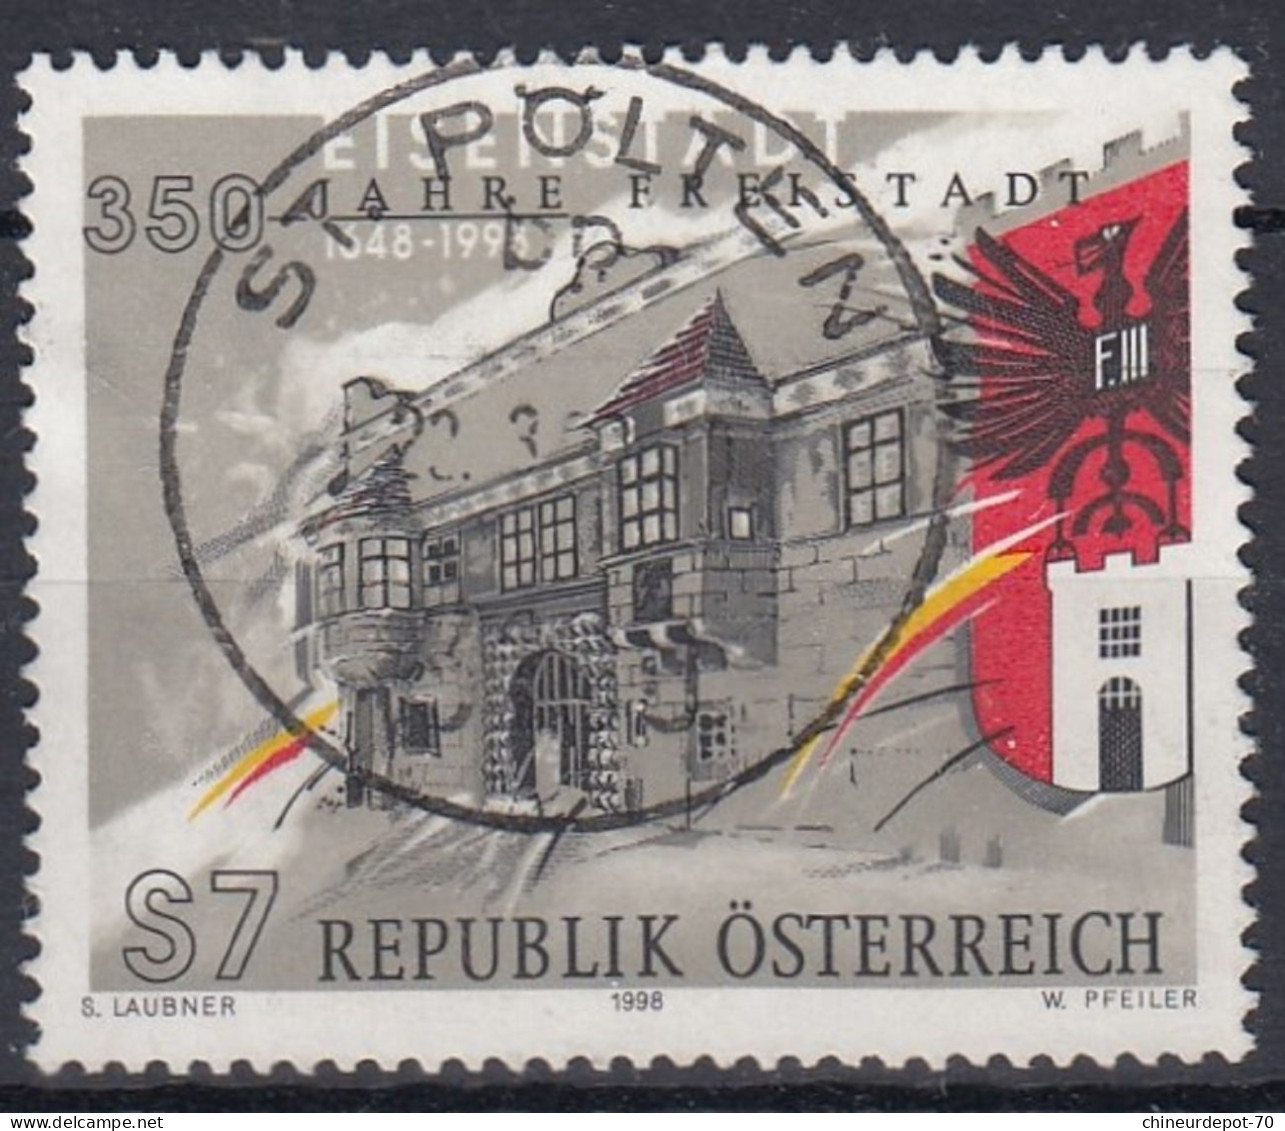 S7 REPUBLIK ÖSTERREICH S LAUBNER 1998 W PFEILER Cachet Sankt Polten - Usados